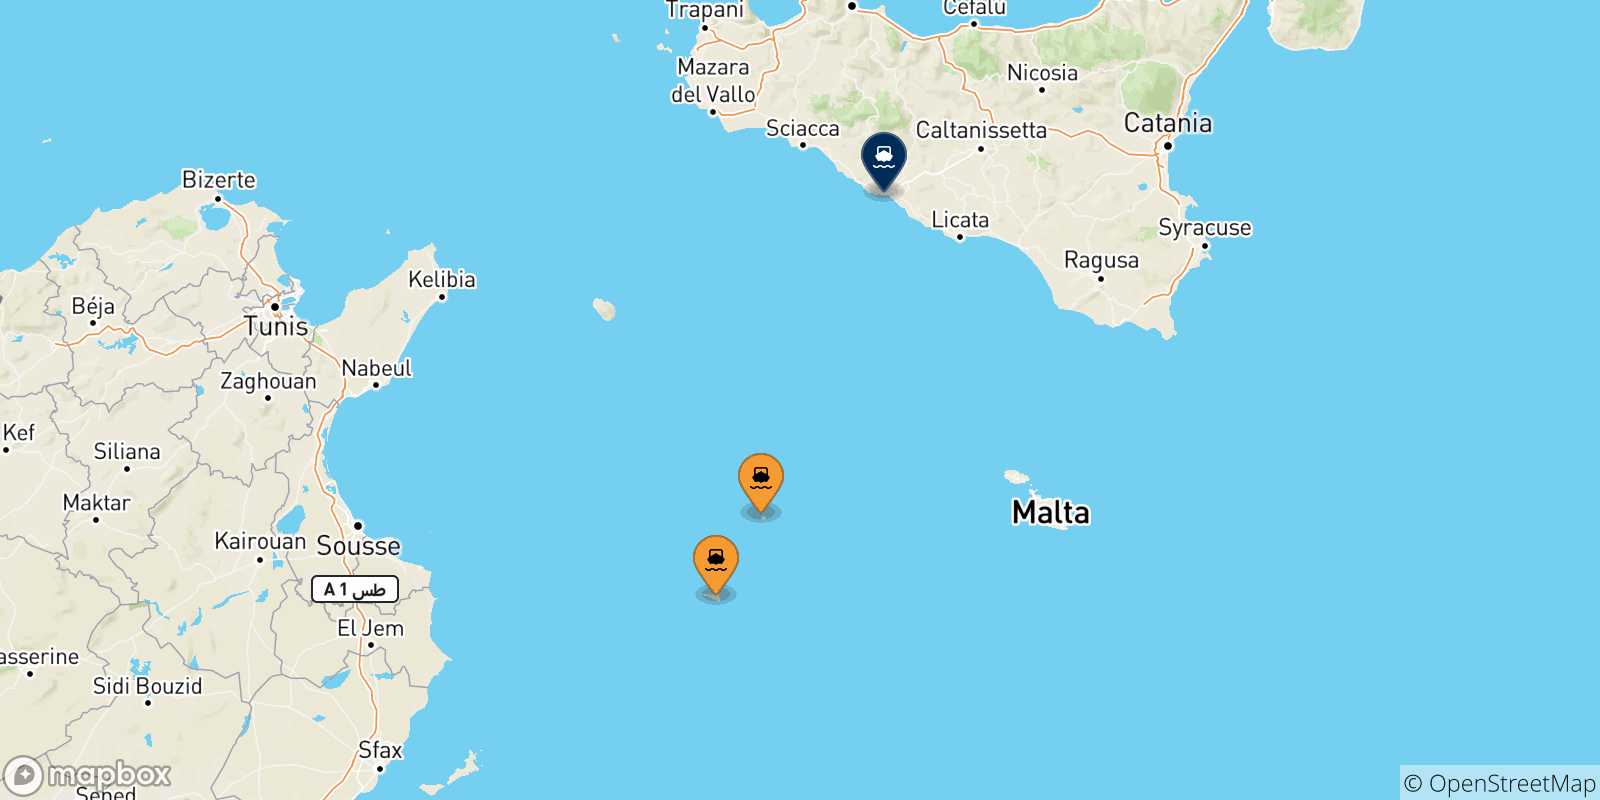 Mappa delle possibili rotte tra le Isole Pelagie e la Sicilia